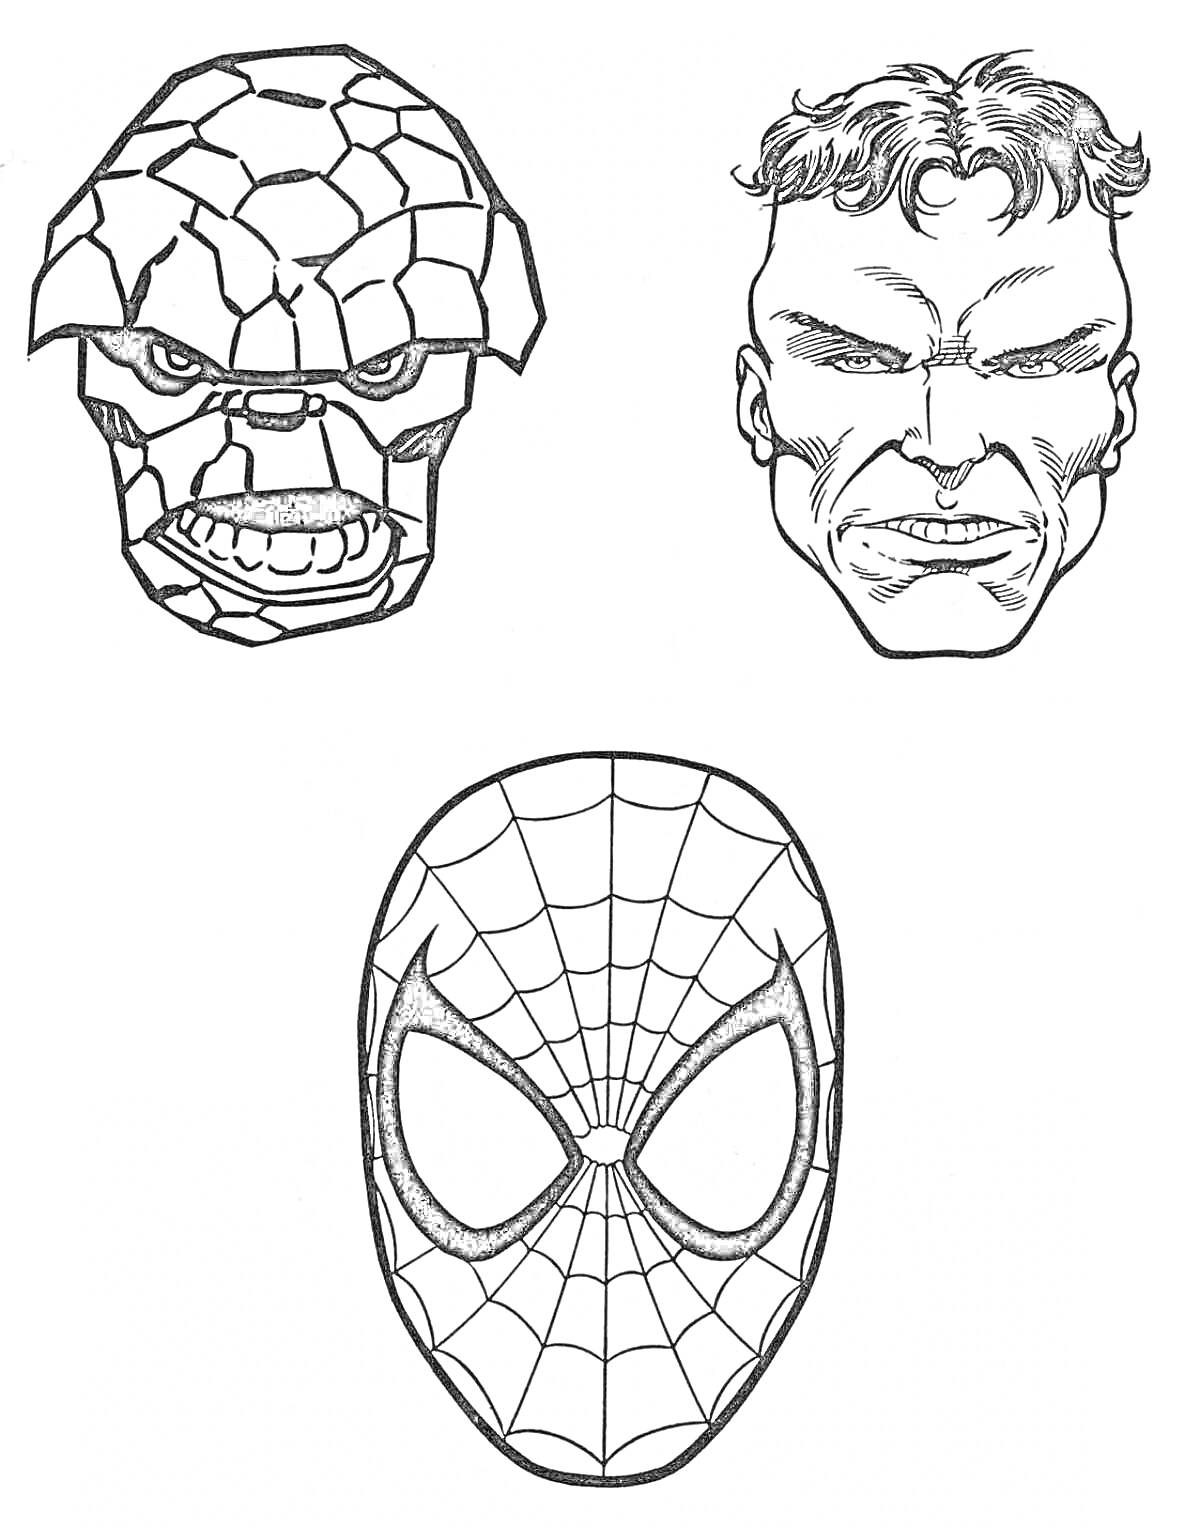 Раскраска Маска человека-паука и две головы супергероев (человек с каменной кожей и человек с короткими волосами и агрессивным выражением лица).